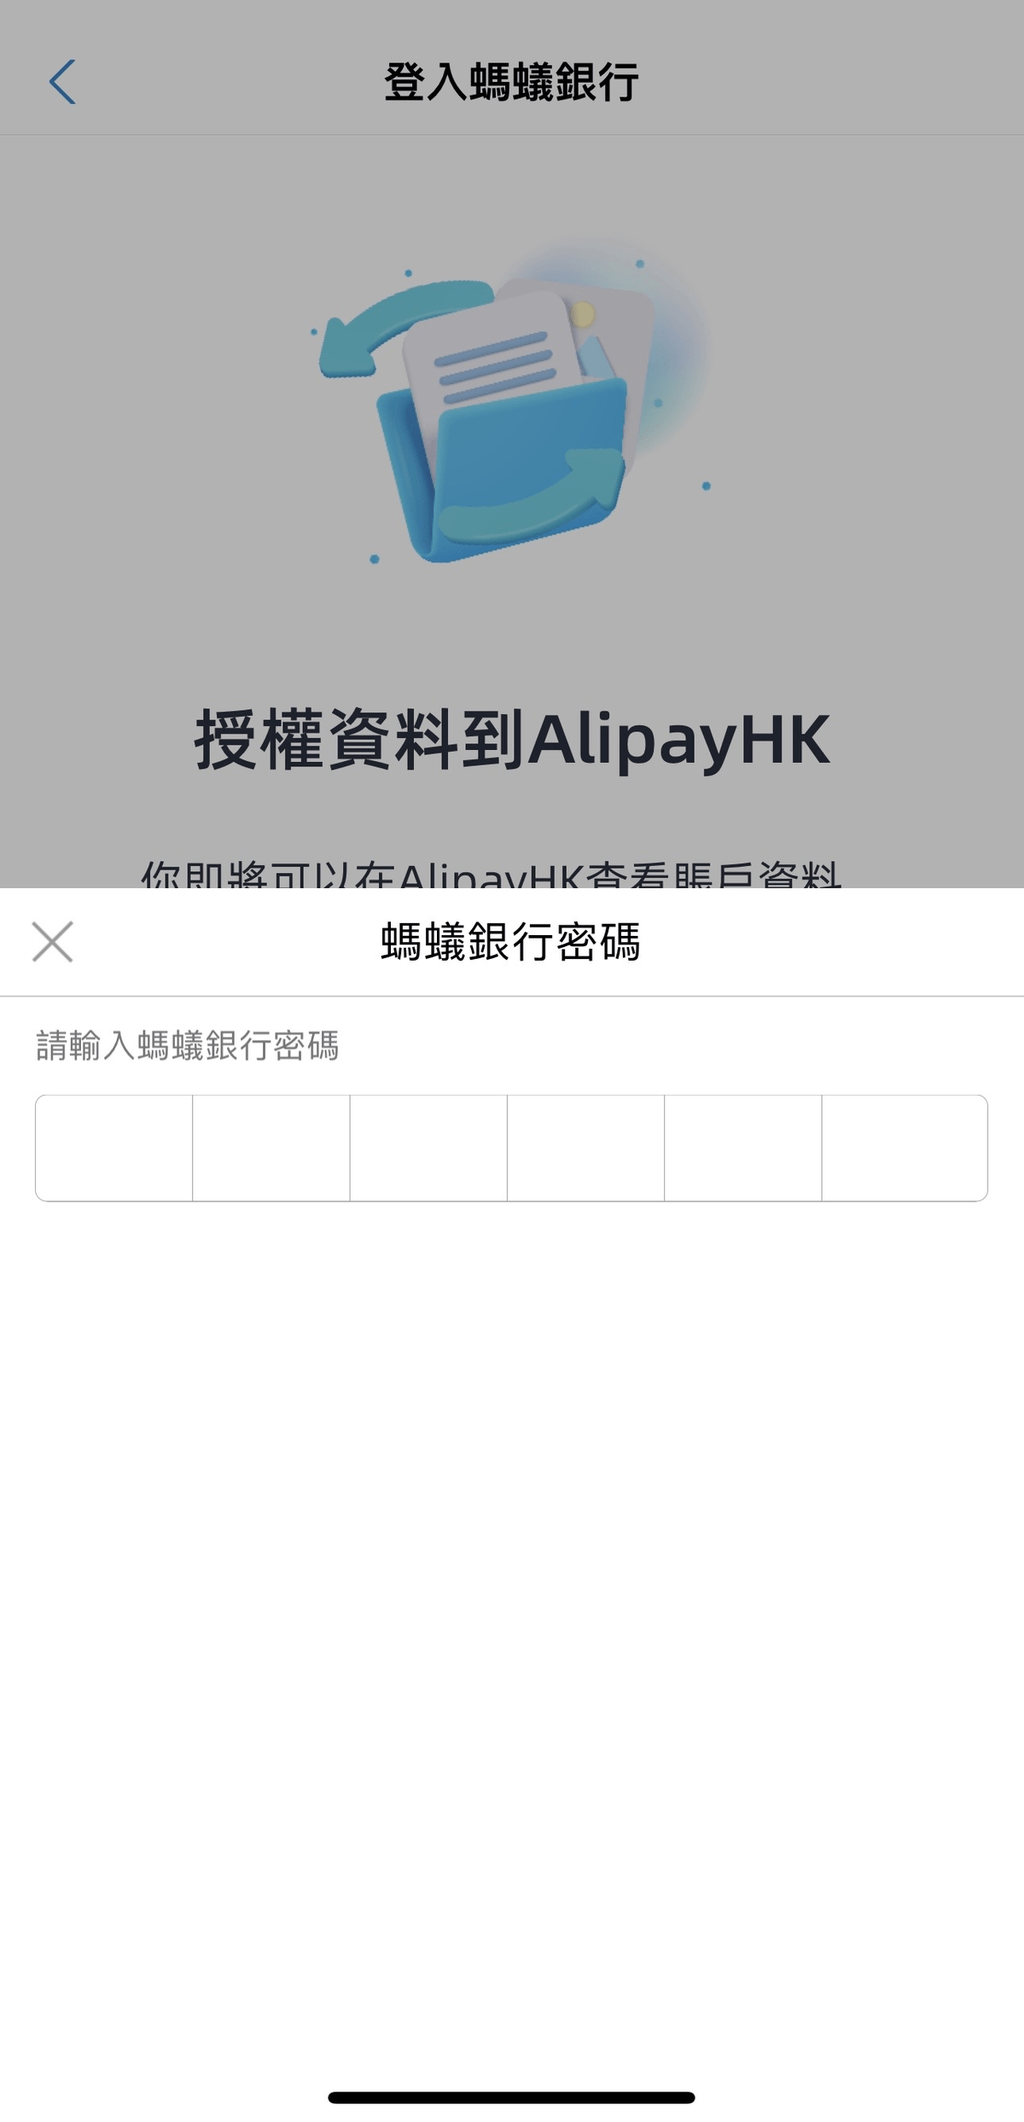 5. 輸入螞蟻銀行密碼登入銀行，並允許授權資料到 AlipayHK；